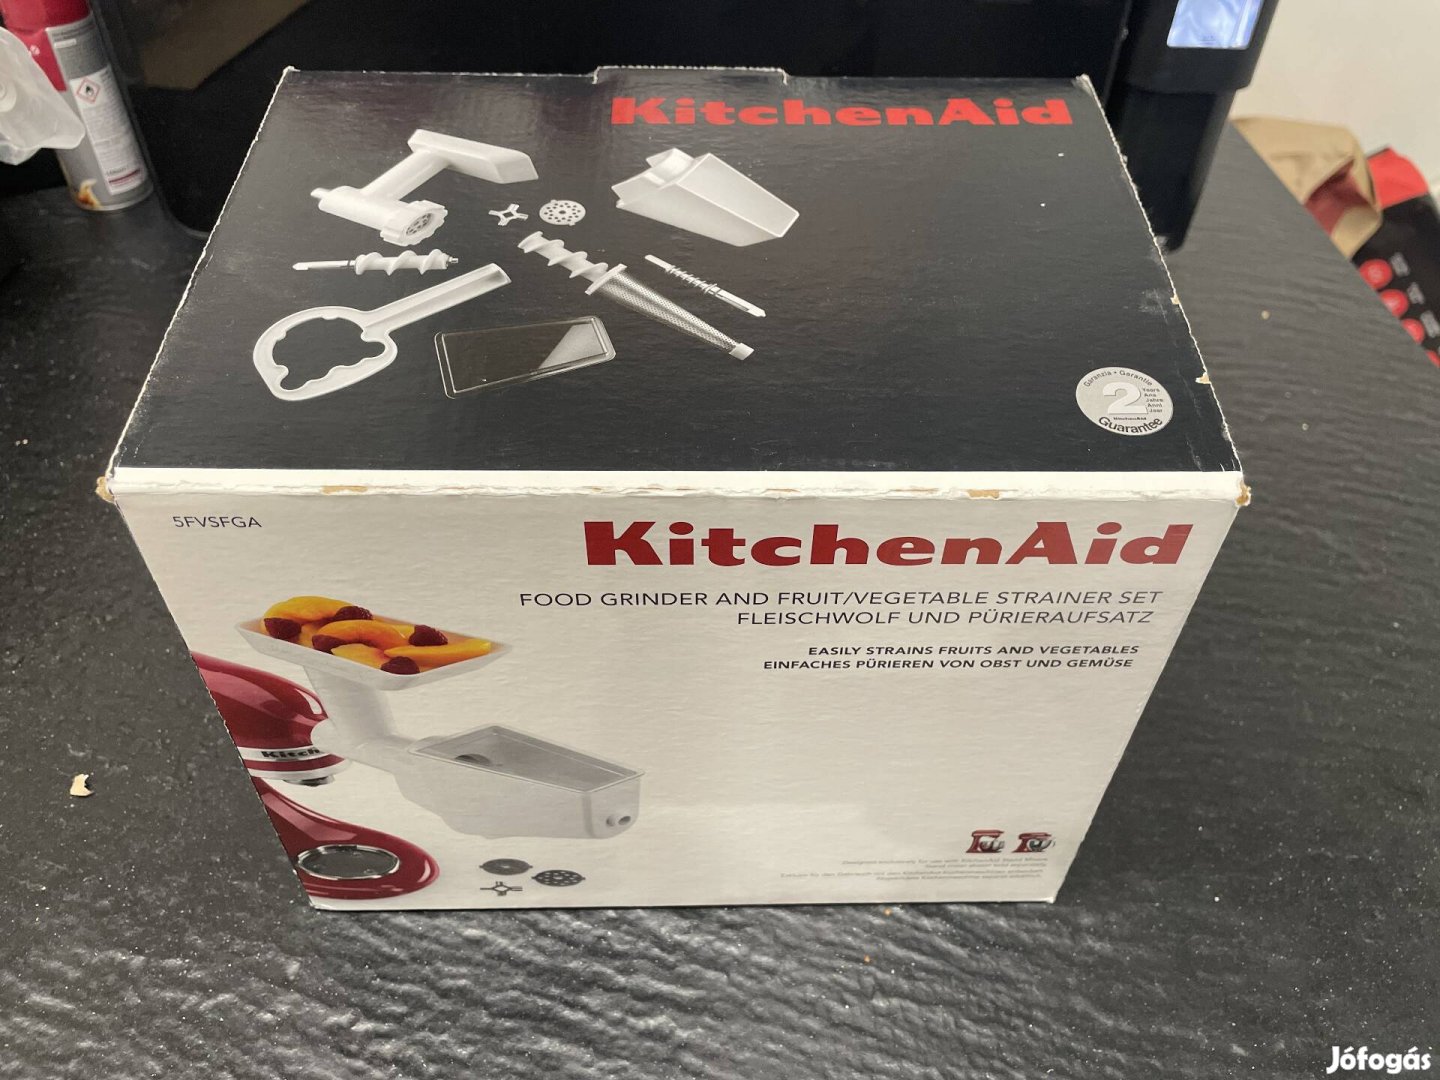 Kitchenaid 5Fvsga Húsdaráló és püré készítő új  kitchen aid 